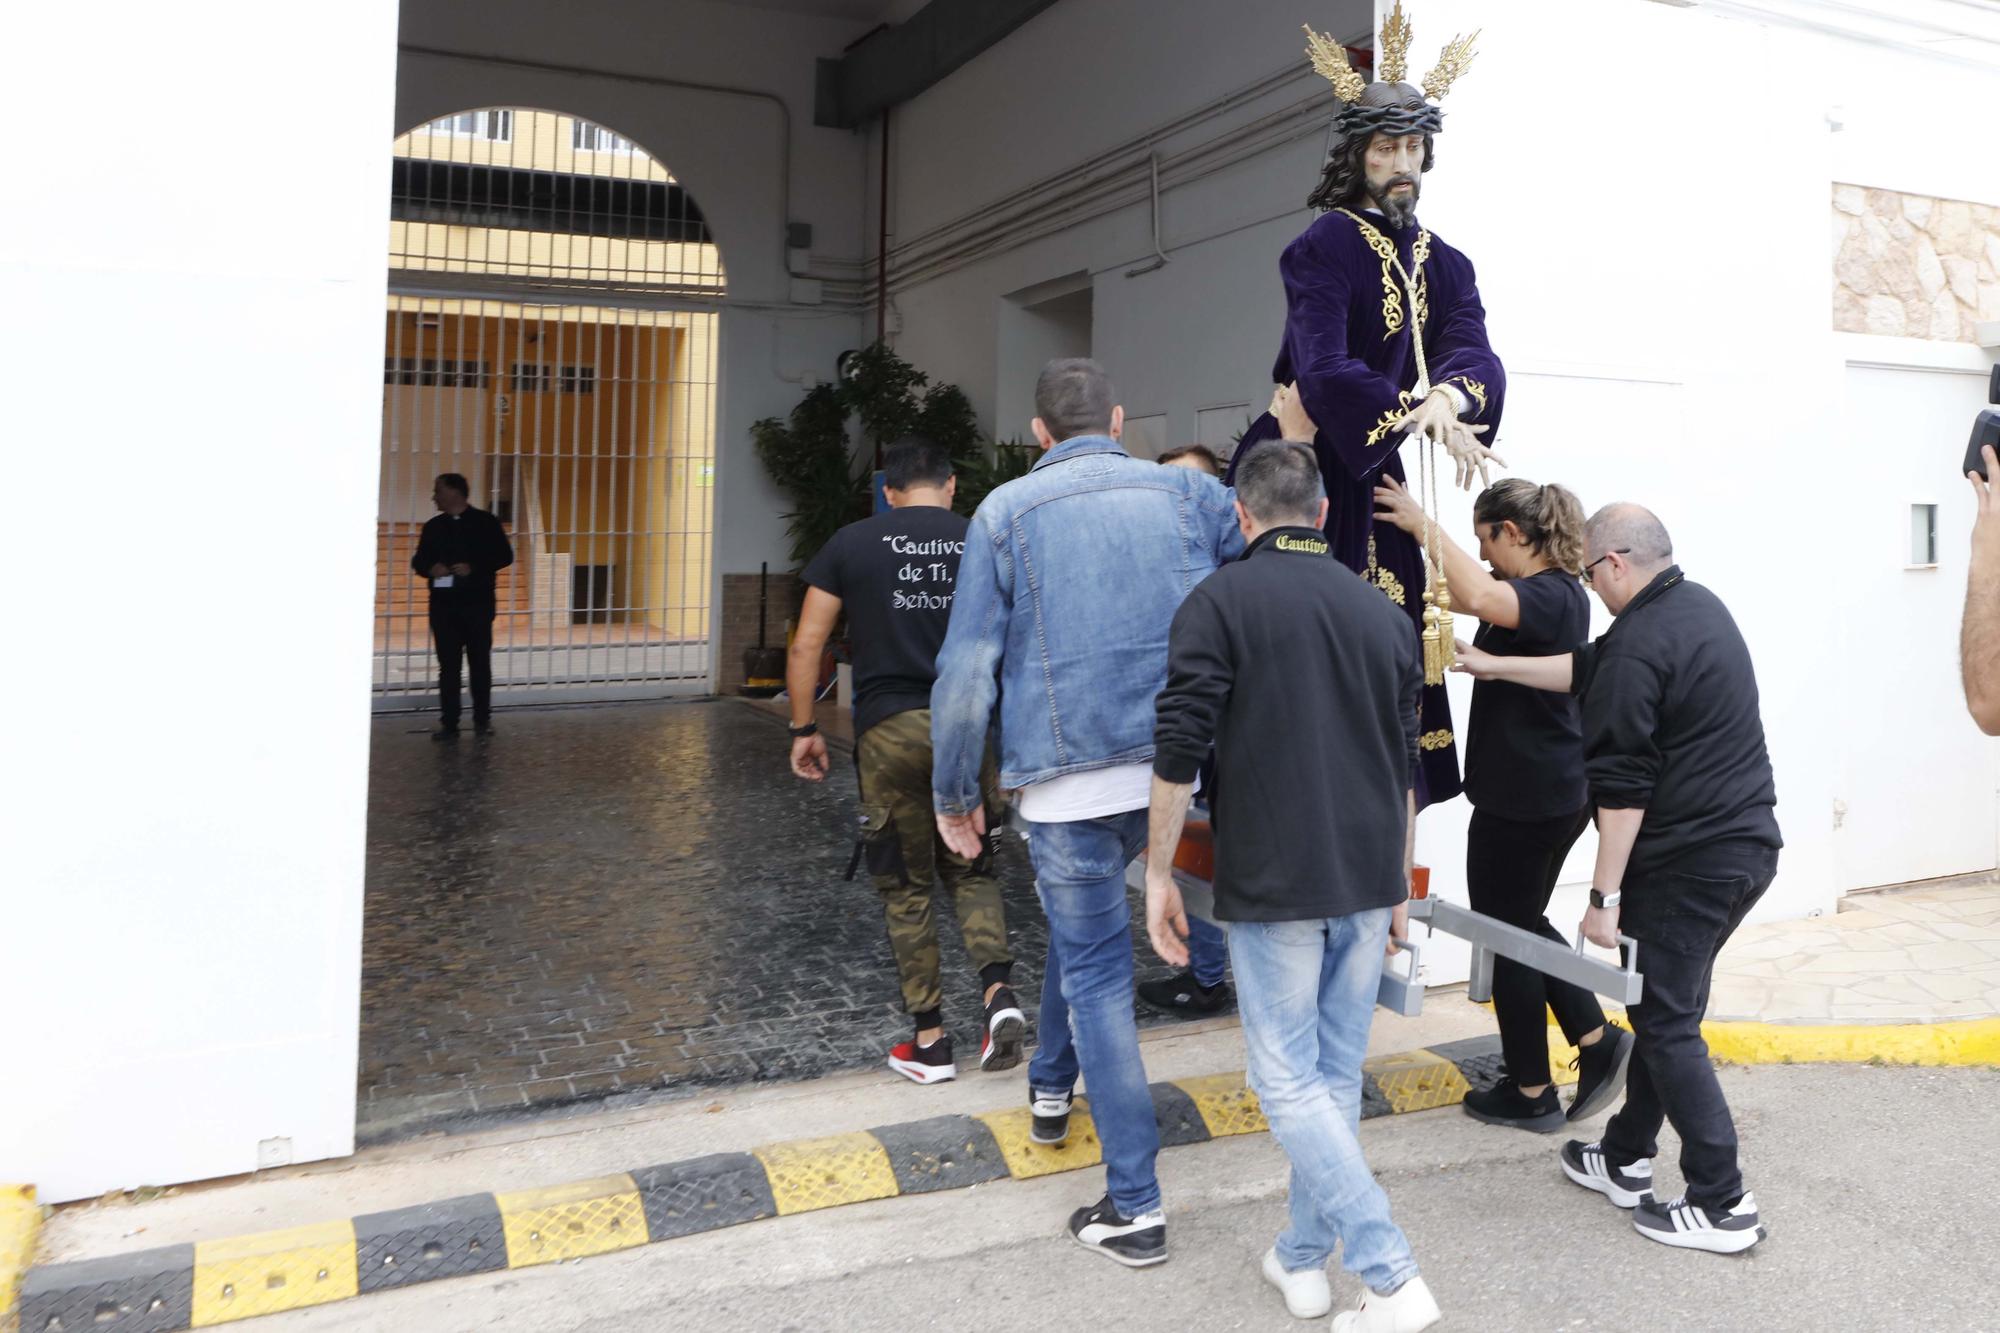 Galería de imágenes de la visita del Cristo Cautivo a la cárcel de Ibiza